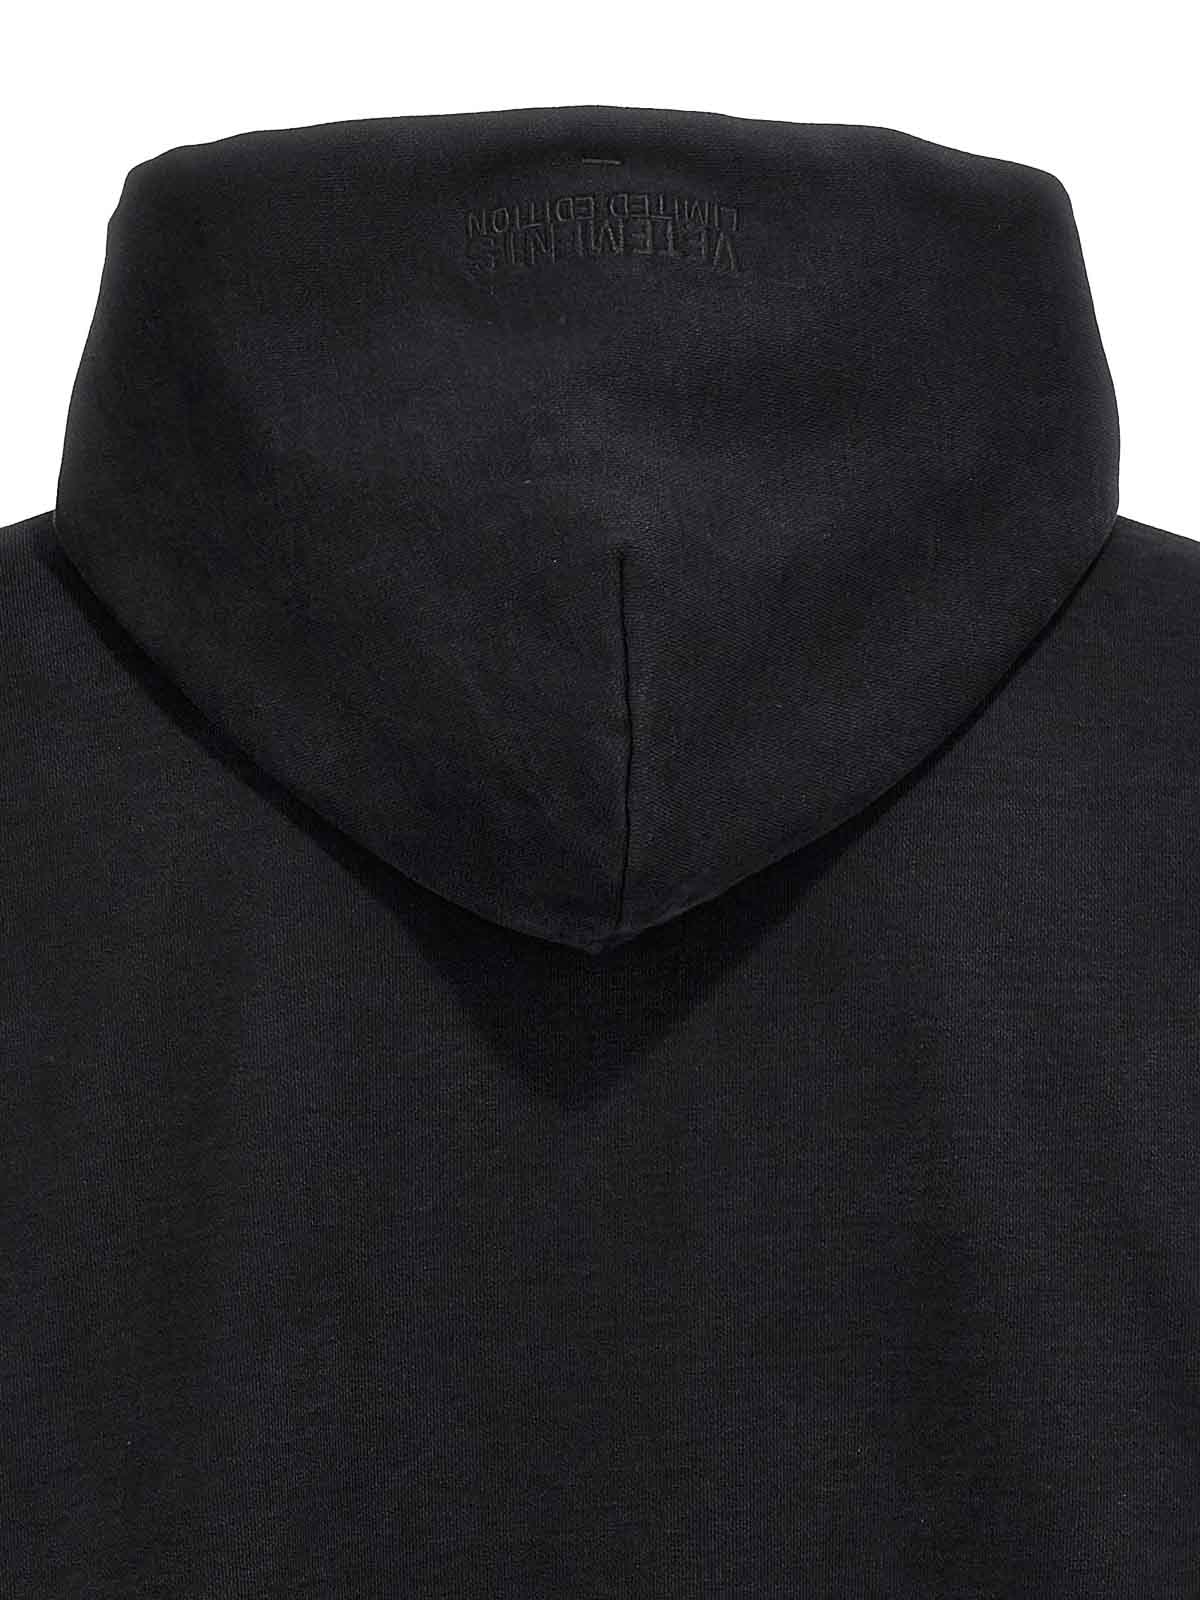 Sweatshirts & Sweaters Vetements - Reverse anarchy hoodie 